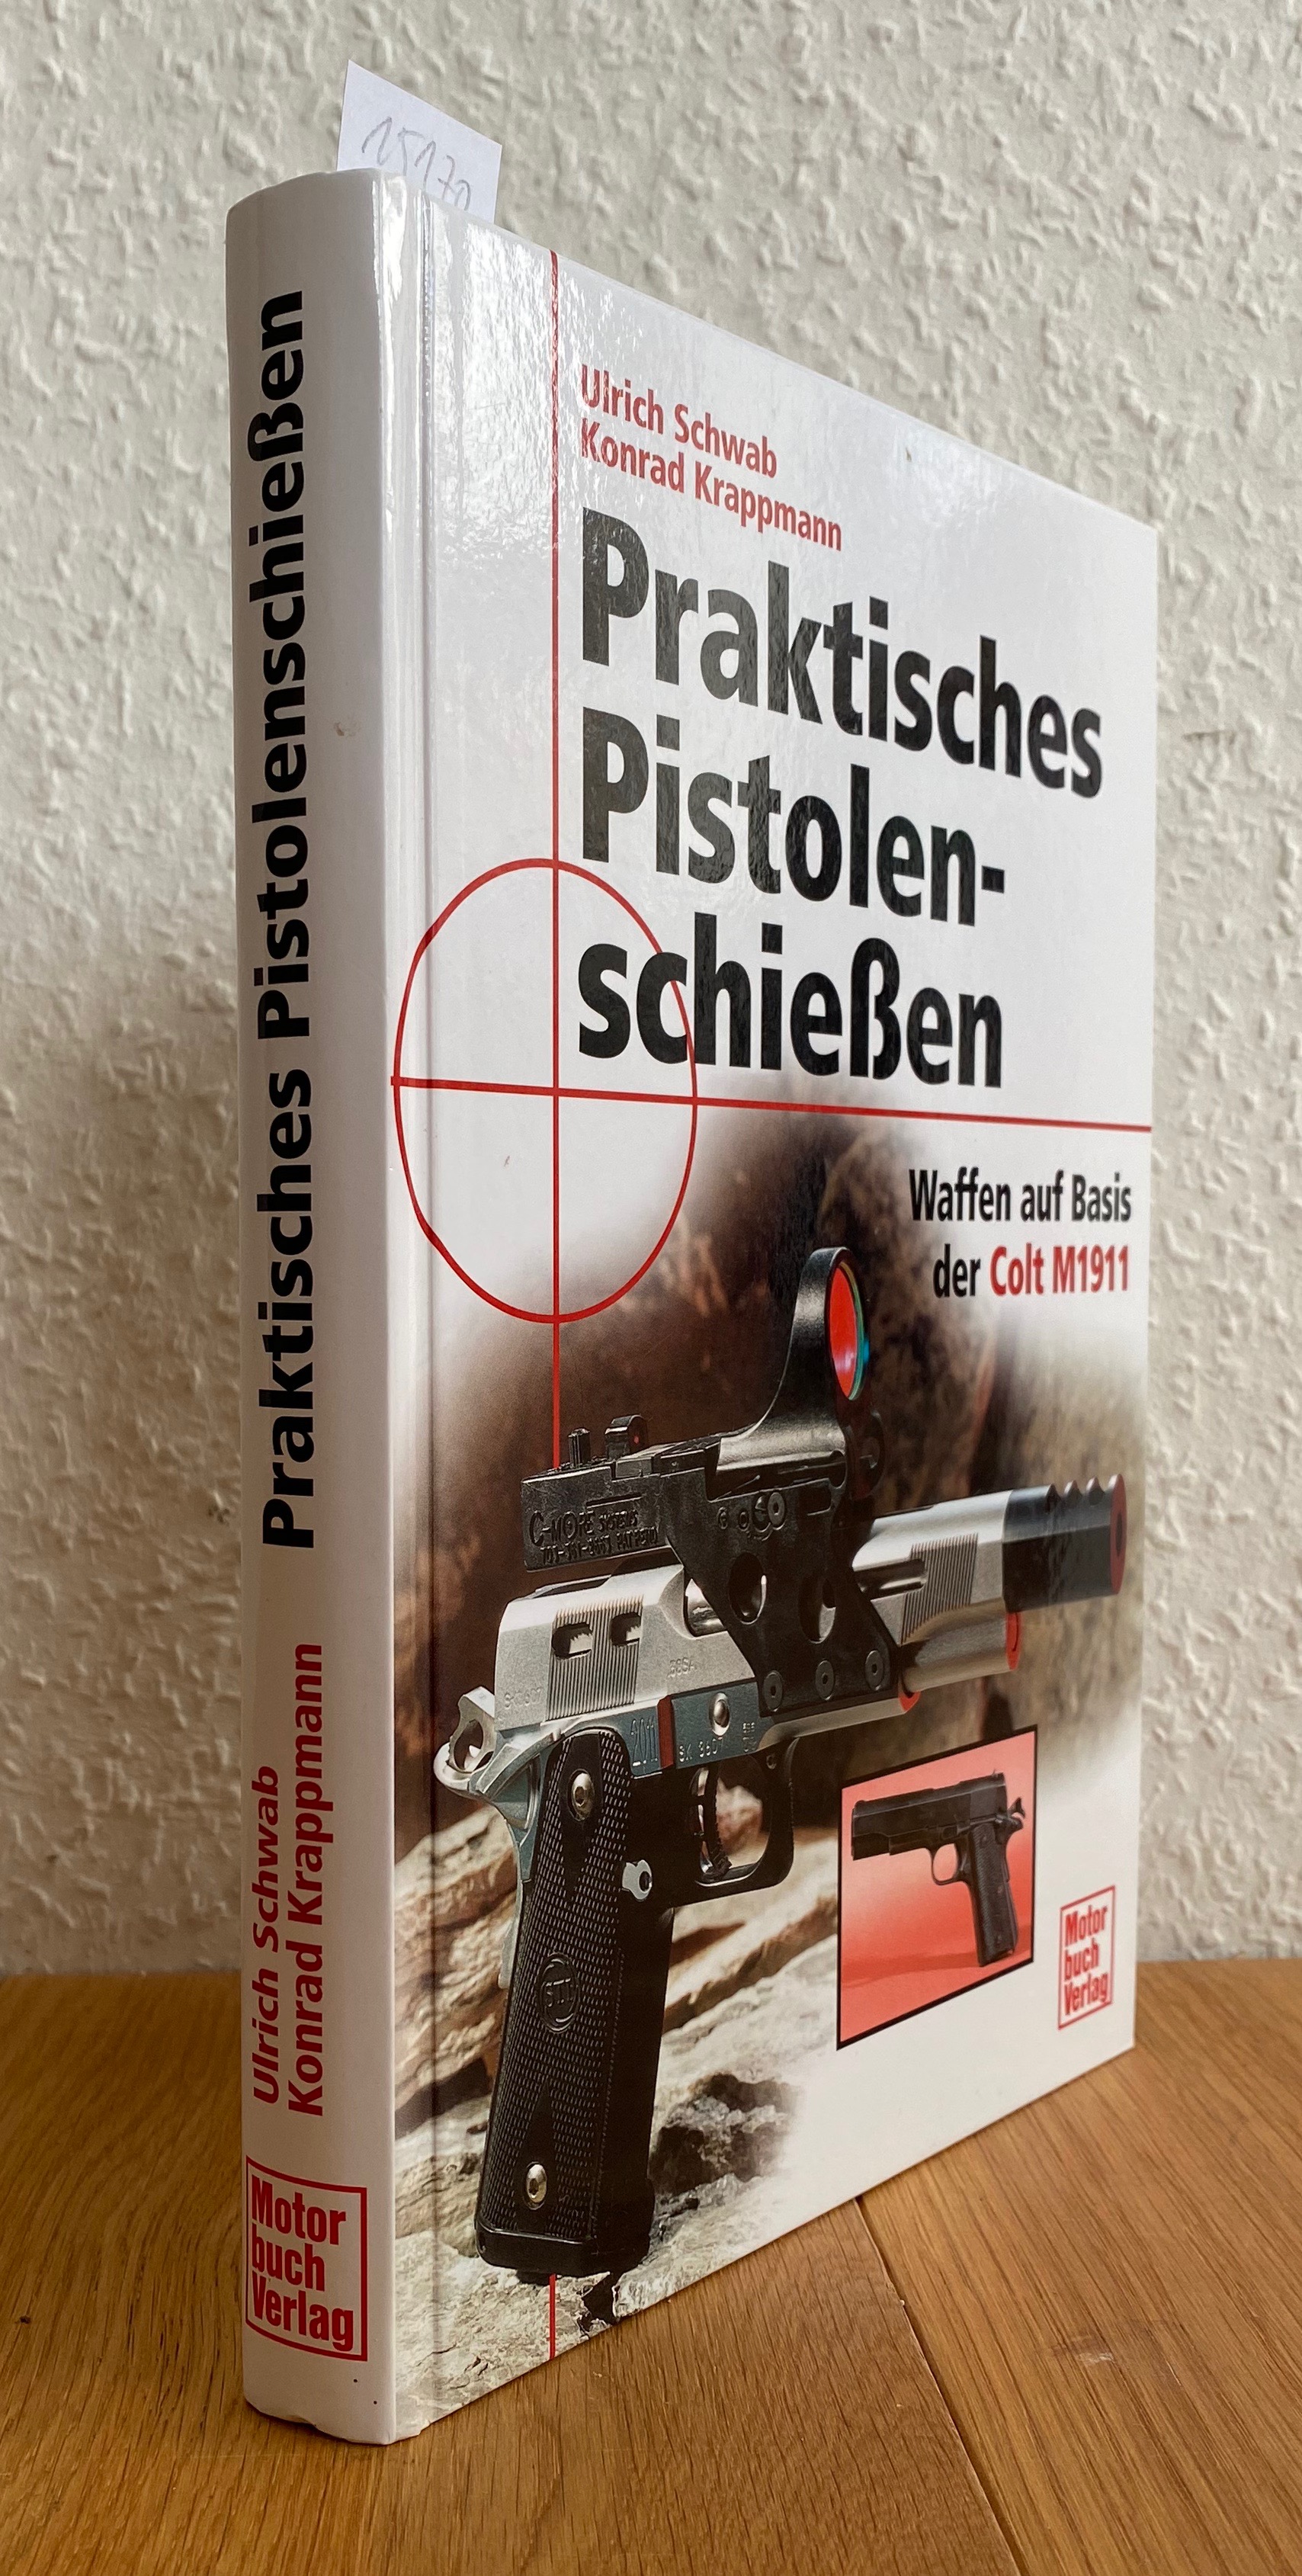 Praktisches Pistolenschießen. Waffen auf Basis der Colt M1911. - Schwab, Ulrich und Konrad Krappmann